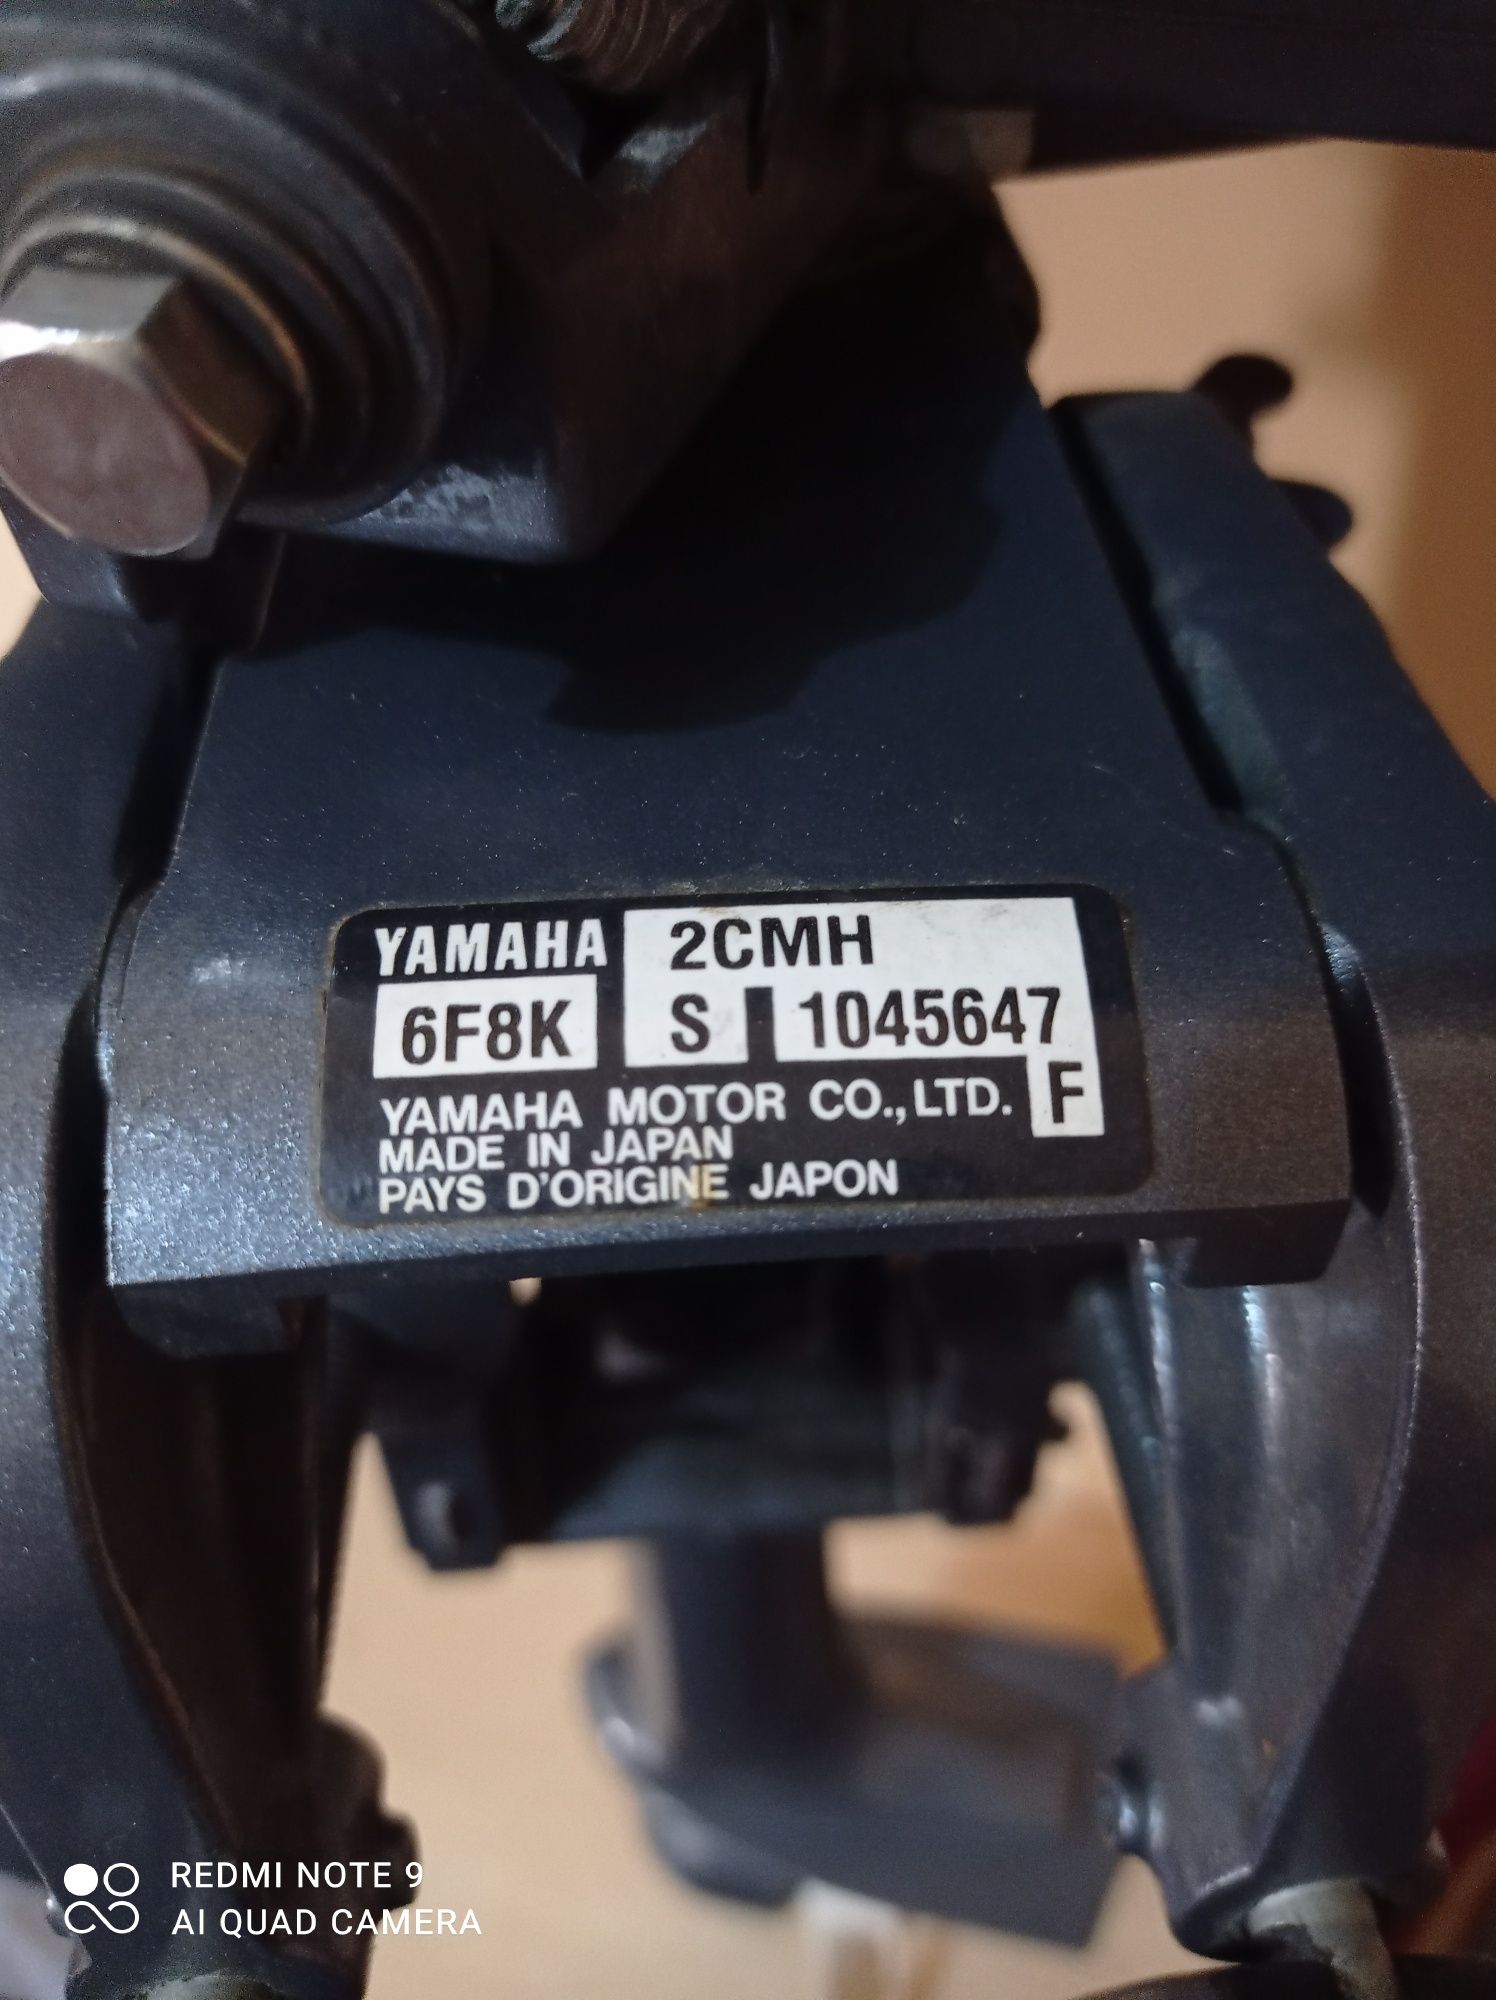 Lodka motor Yamaha2